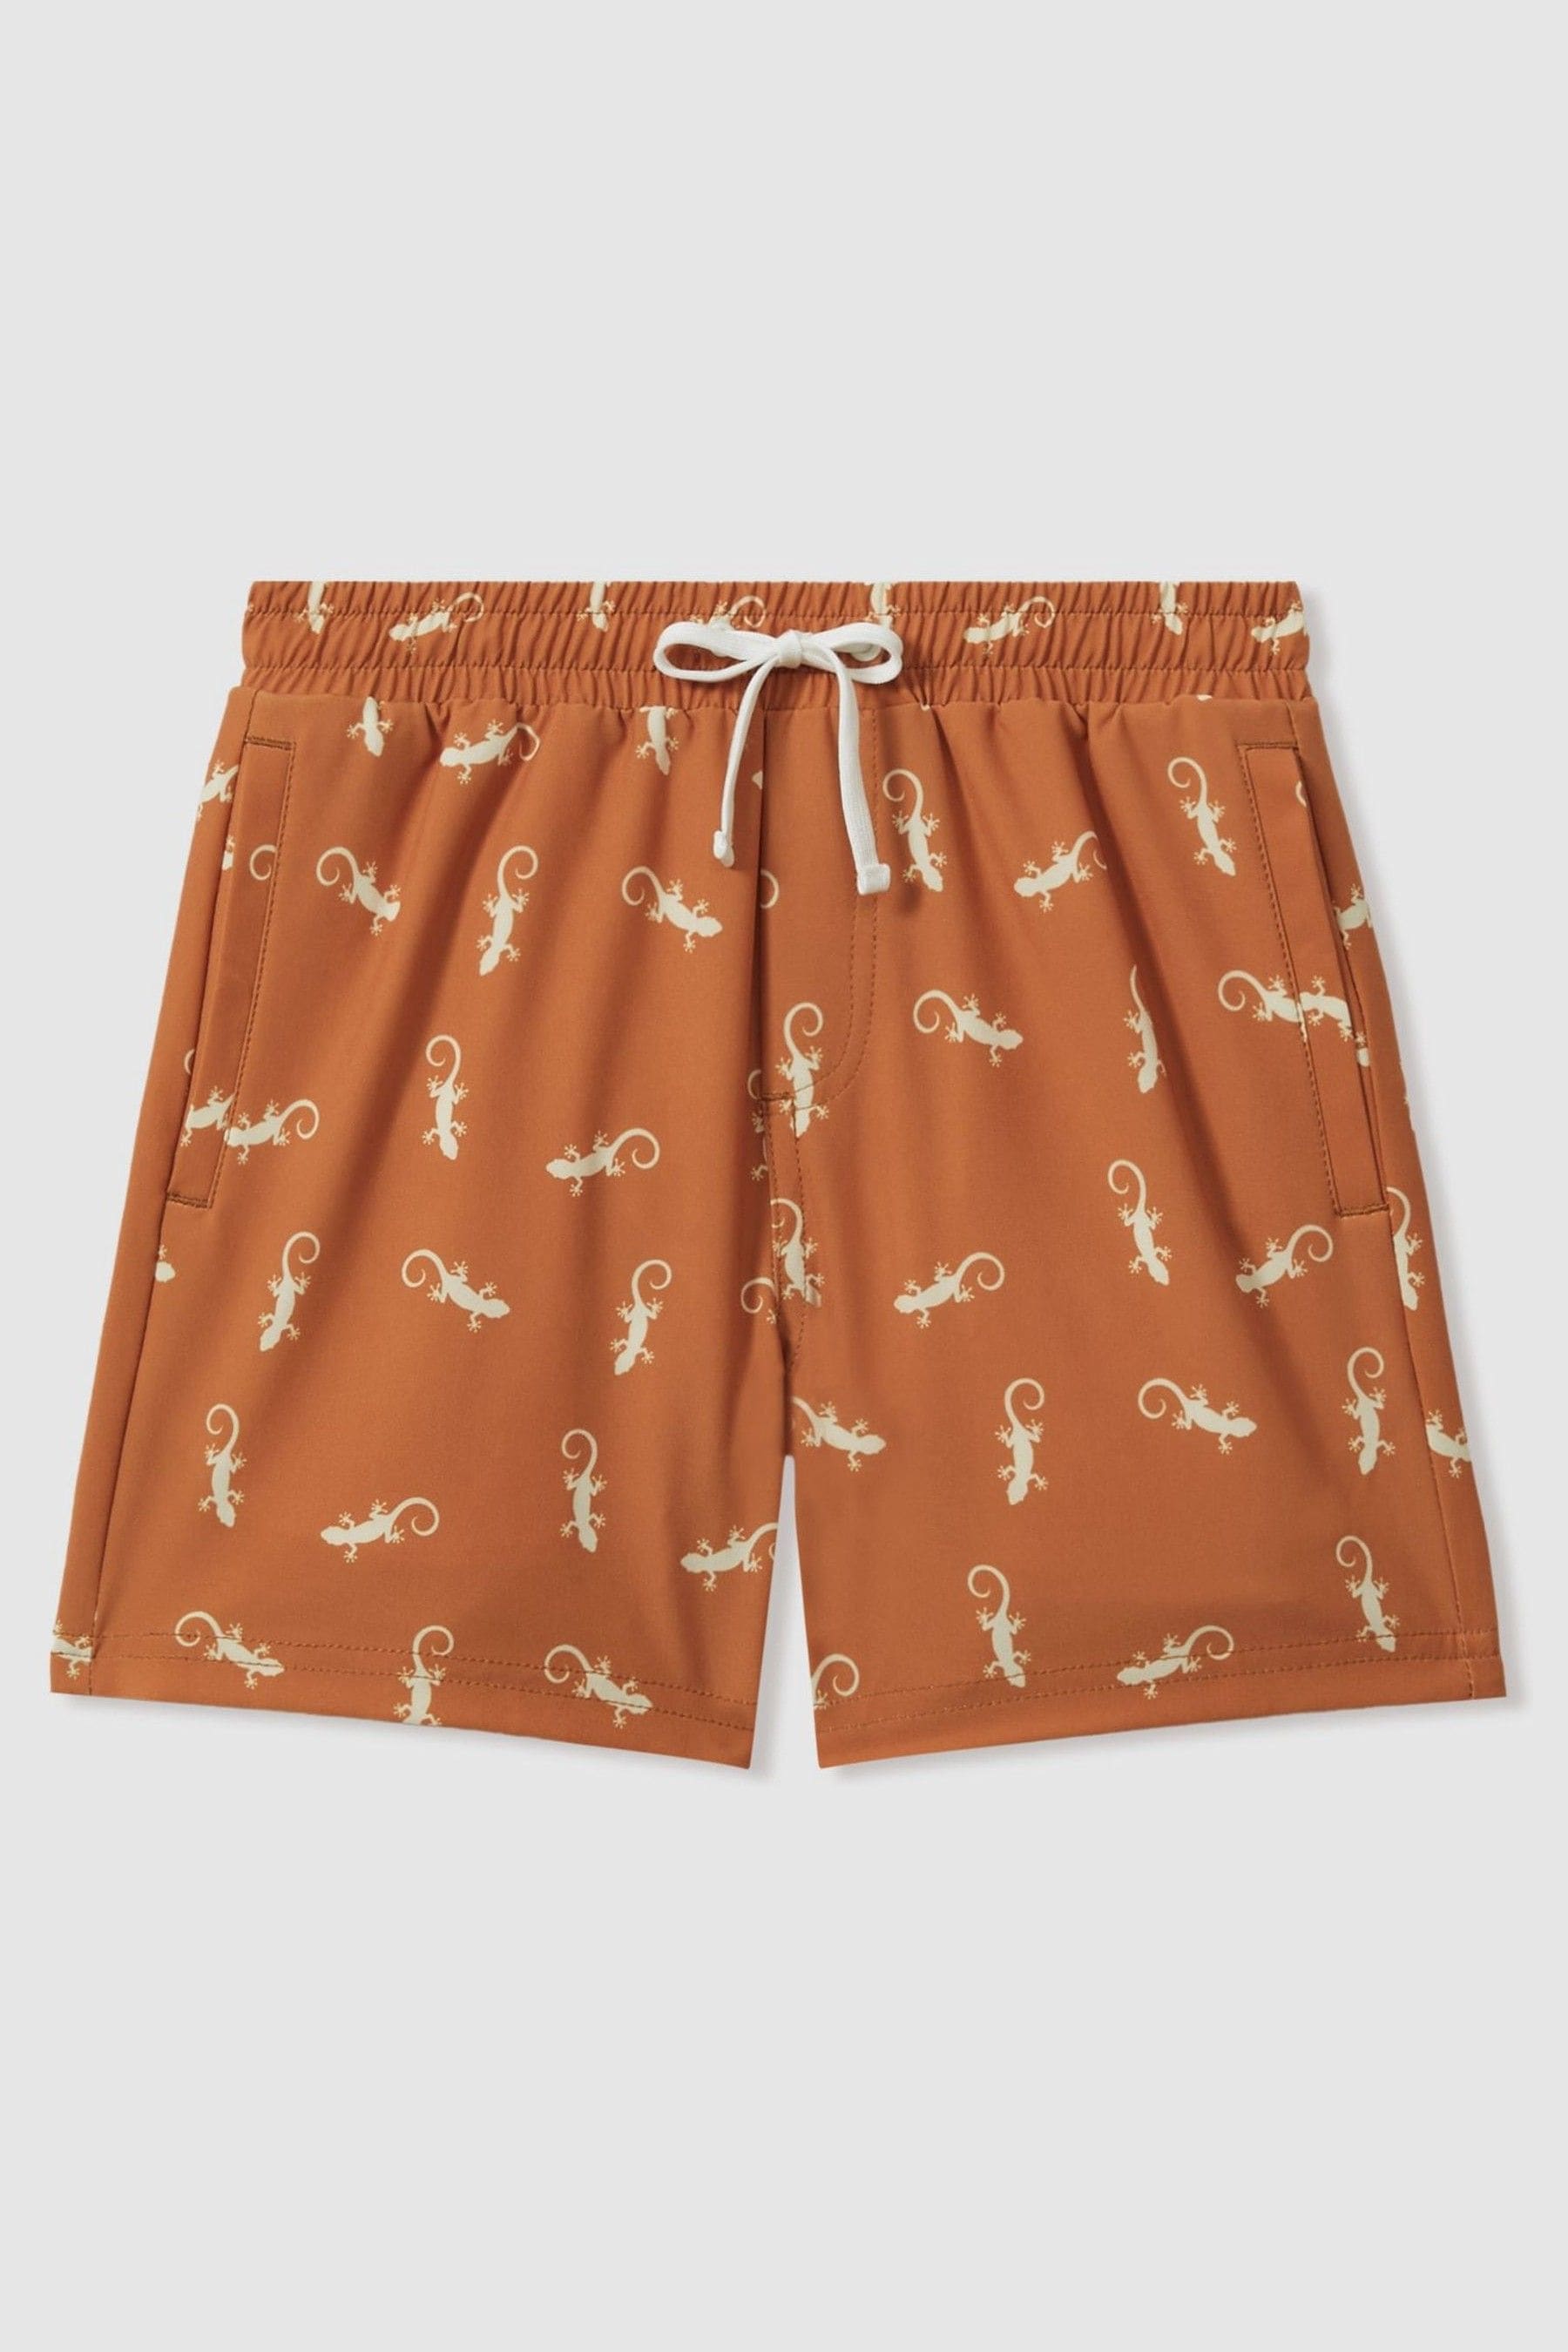 Reiss Cammy - Orange/white Reptile Print Drawstring Swim Shorts, Uk 13-14 Yrs In Brown